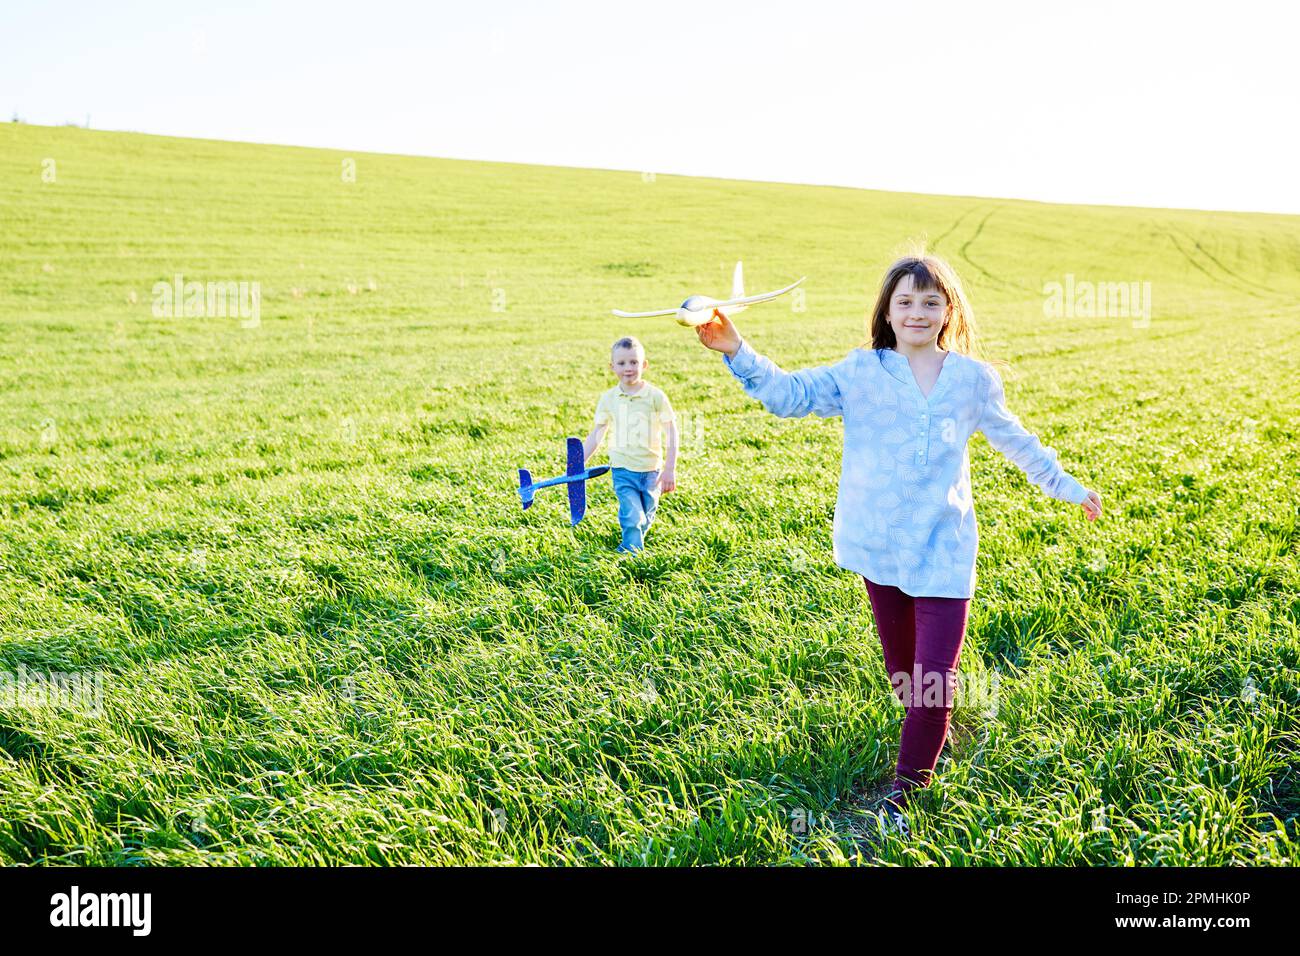 Il ragazzo e la ragazza che corrono che tengono due aeroplani gialli e blu giocattolo nel campo durante la giornata estiva di sole Foto Stock